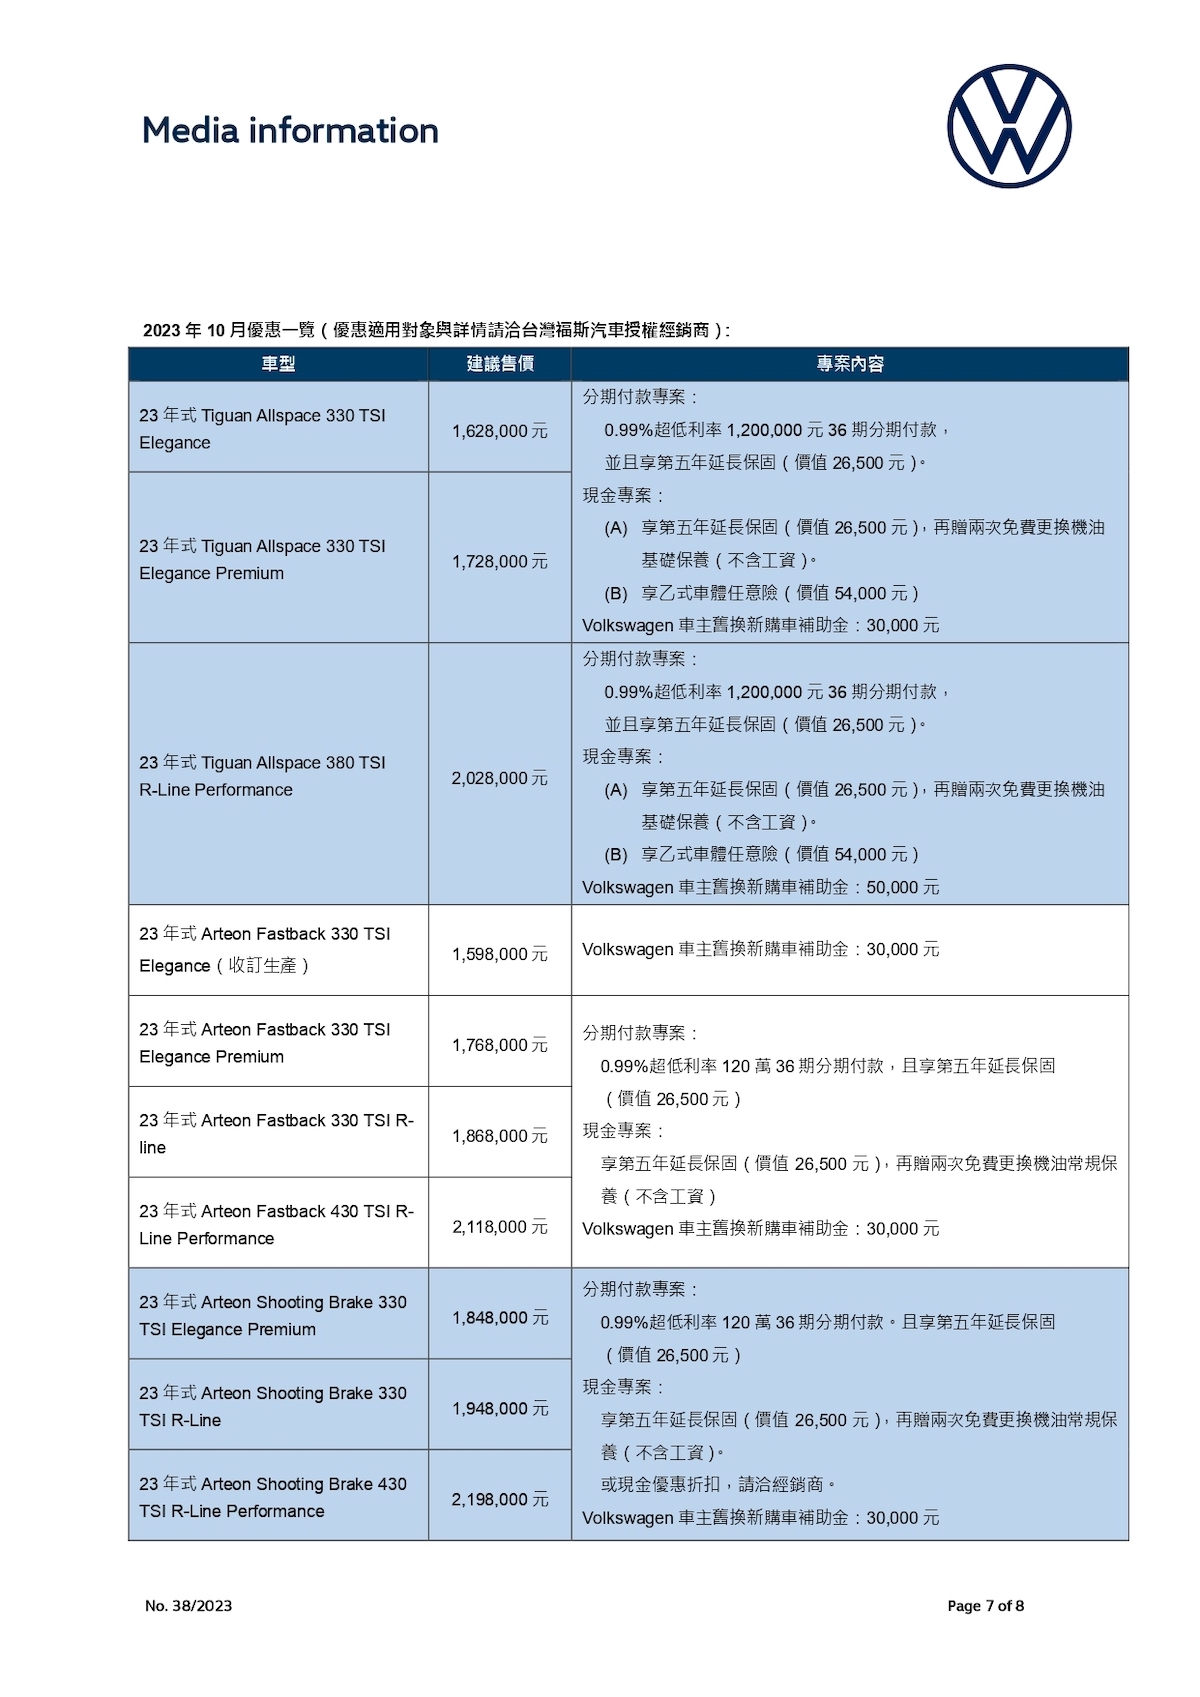 【台灣福斯汽車新聞稿】「德藝本事」The Tiguan指定車型享限時優惠最高20萬  10月底前領牌加碼抽iPhone 15  敬邀消費者「現在出手」_page-0007.jpg